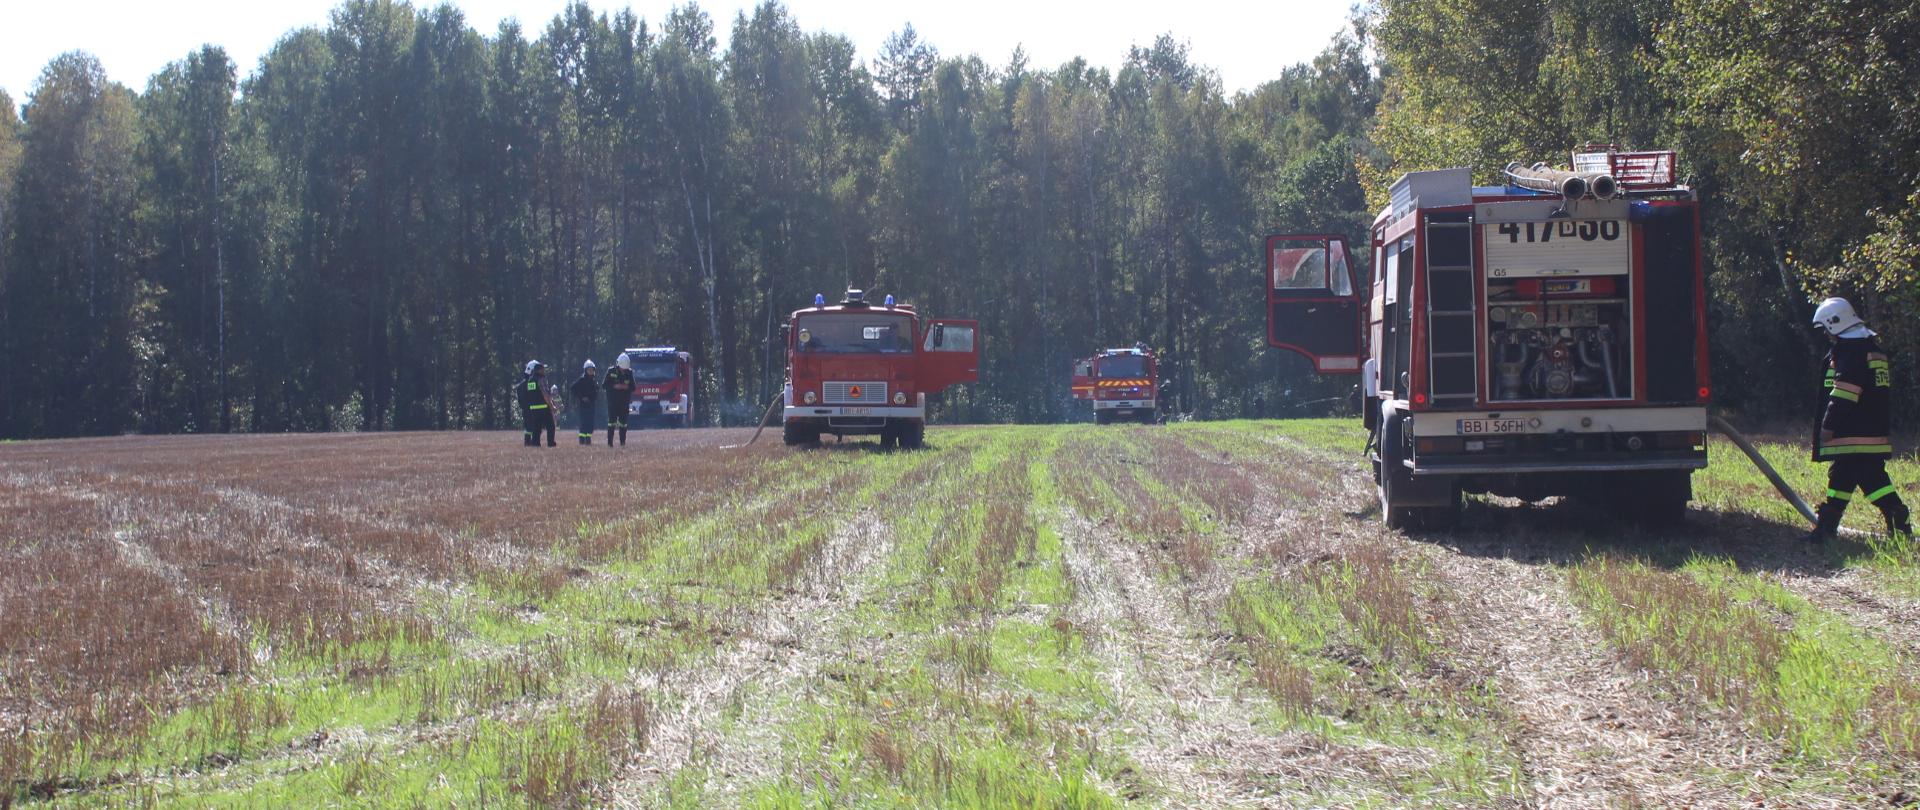 Zdjęcia przedstawia wozy ratowniczo-gaśnicze na ściernisku w pobliżu lasu podczas ćwiczeń gaszenia lasu 